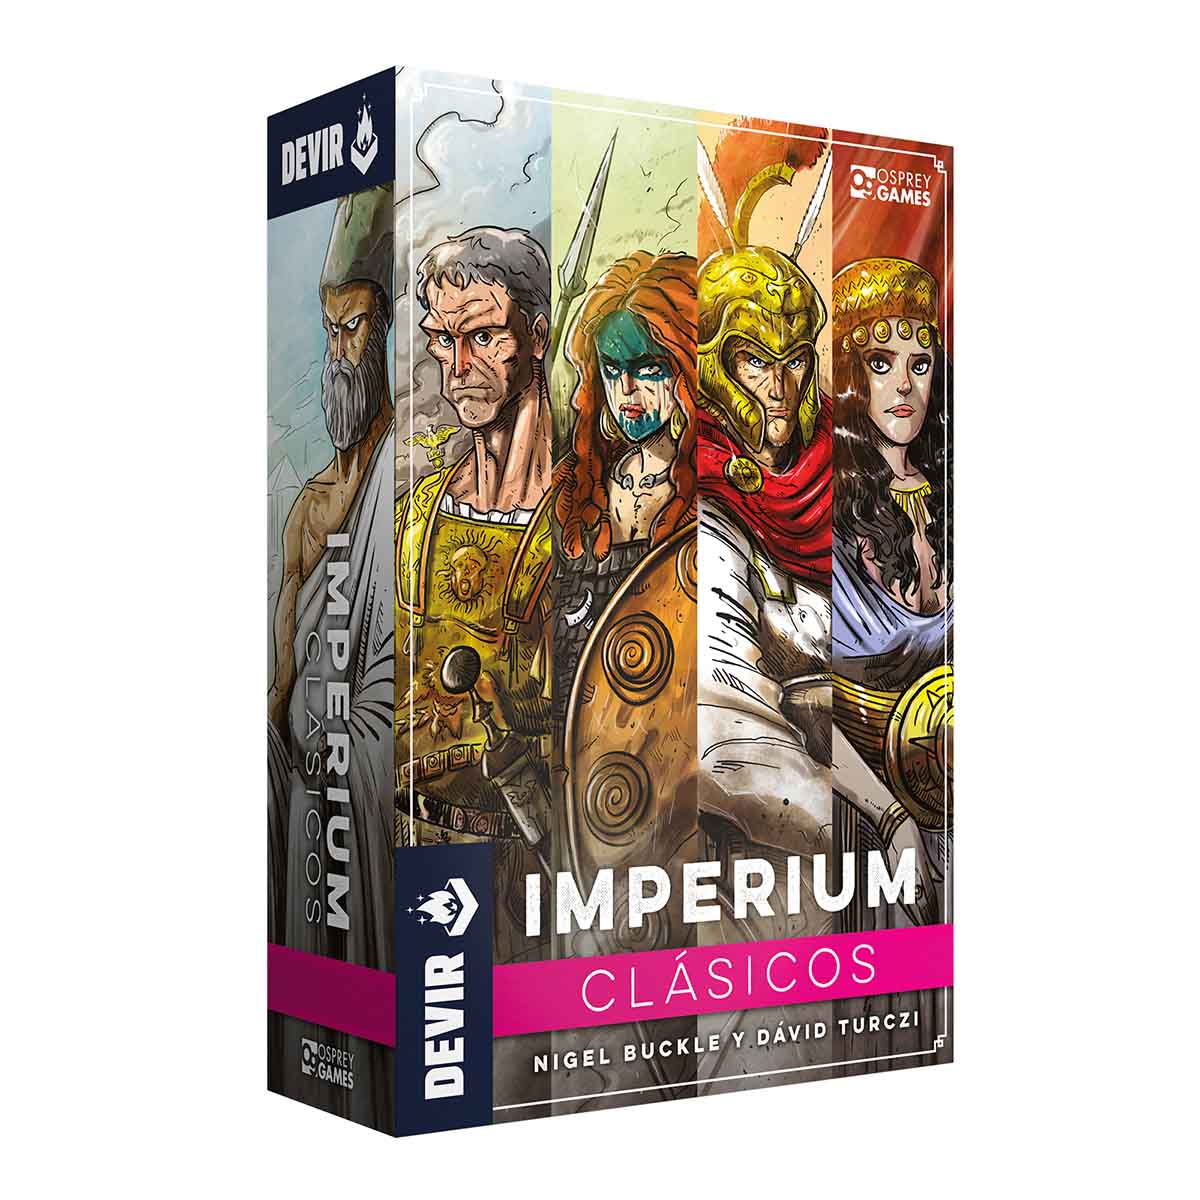 Imperium_Clasicos_1200x1200_box